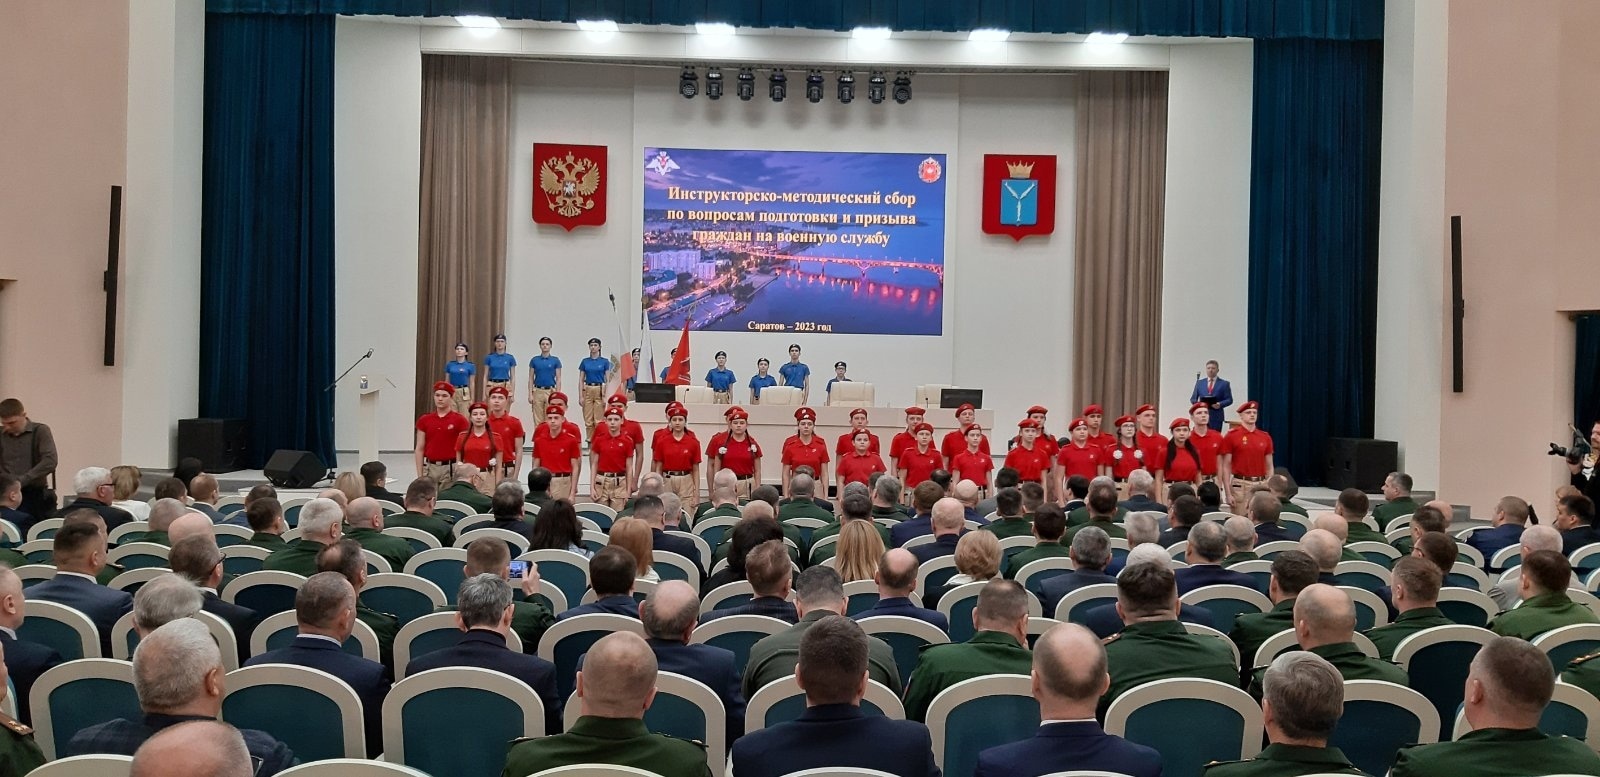 Лицеисты приняли участие в инструкторско-методическом сборе Центрального военного округа.